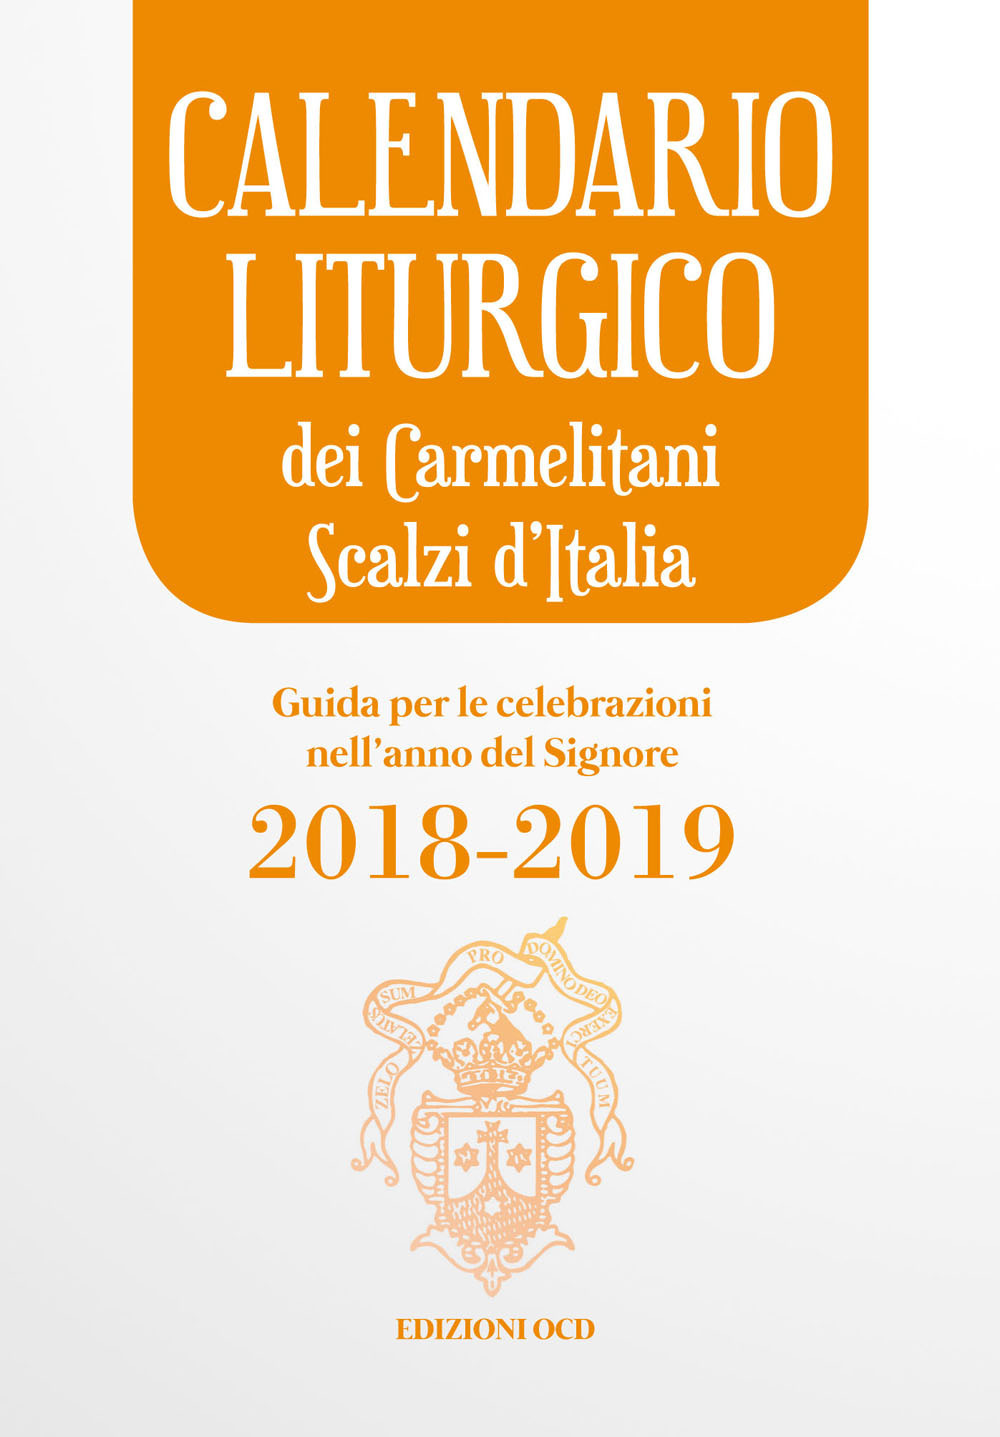 Calendario liturgico dei Carmelitani Scalzi d'Italia. Guida per le celebrazioni nell'anno del Signore 2018-2019